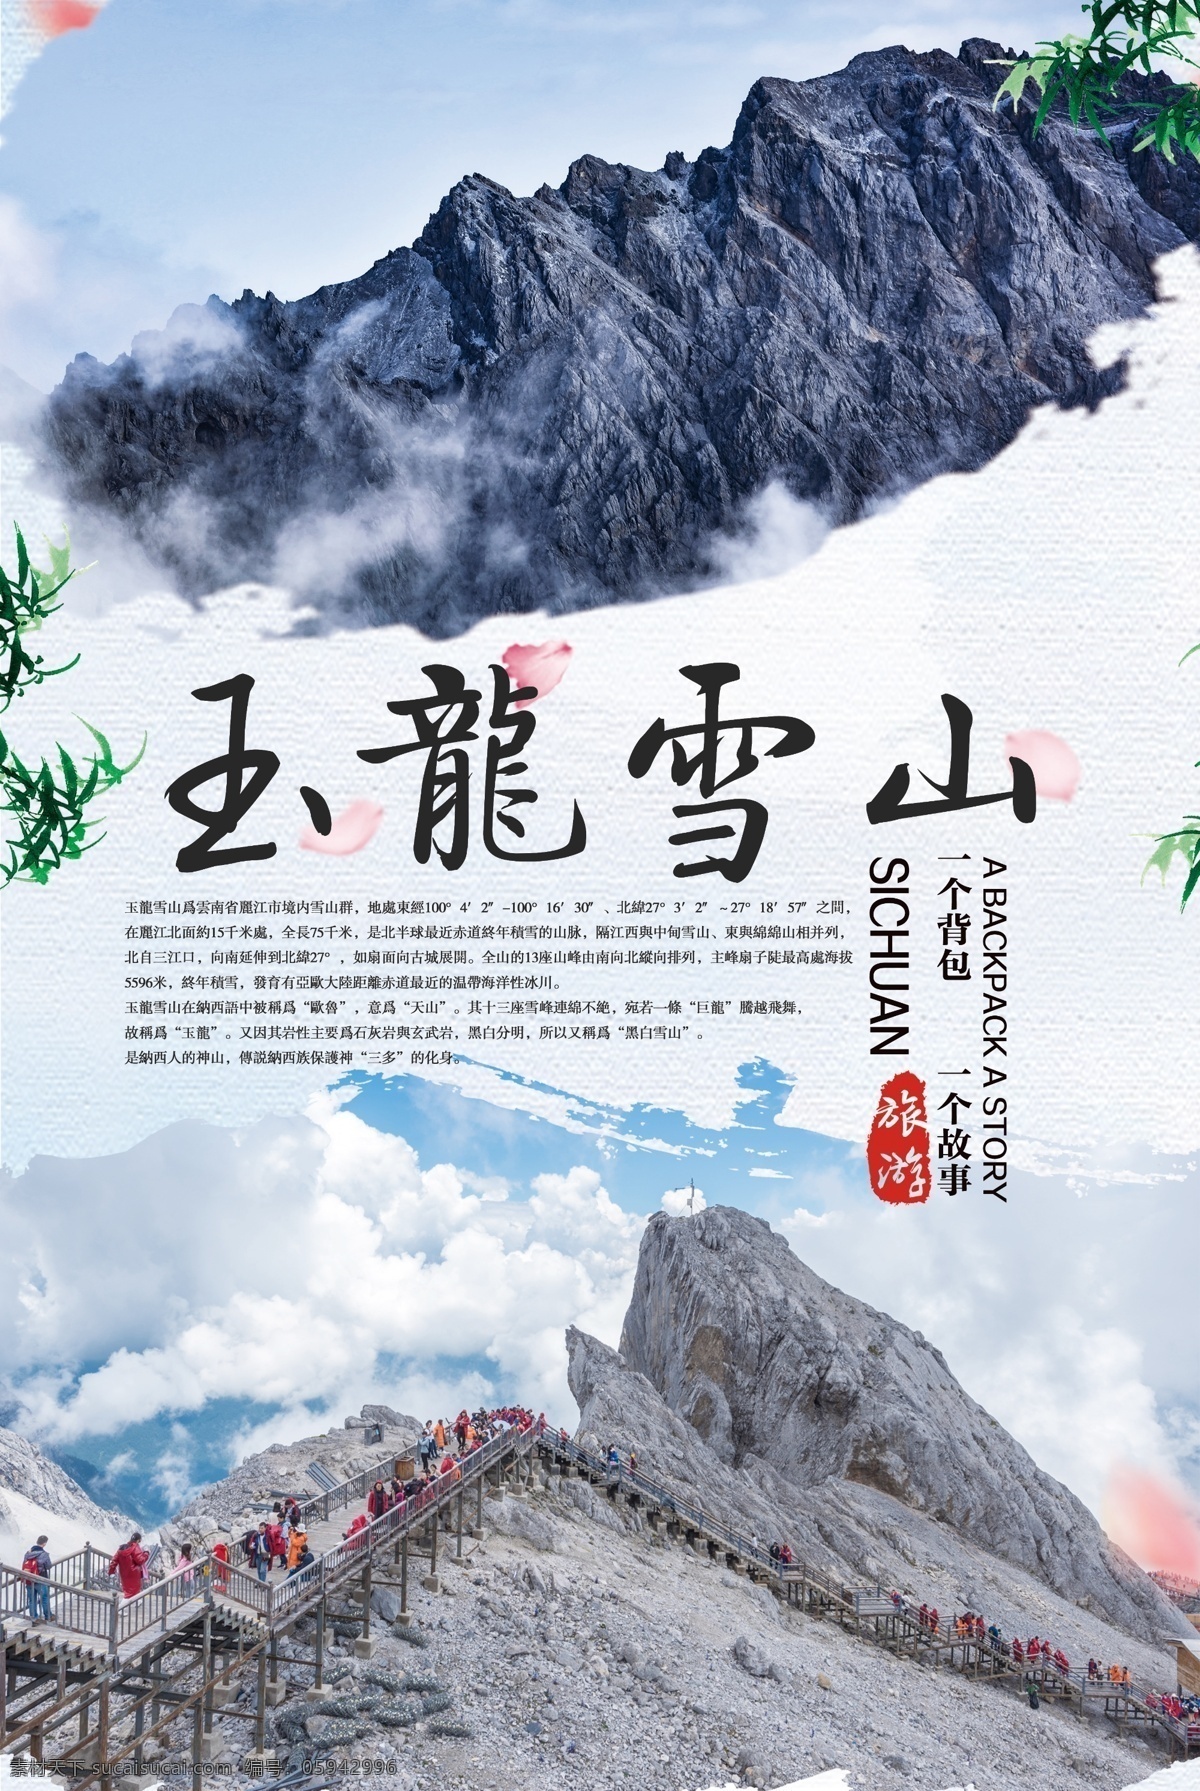 玉龙雪山 旅游 海报 旅游海报 景点 自然风景 风景名胜